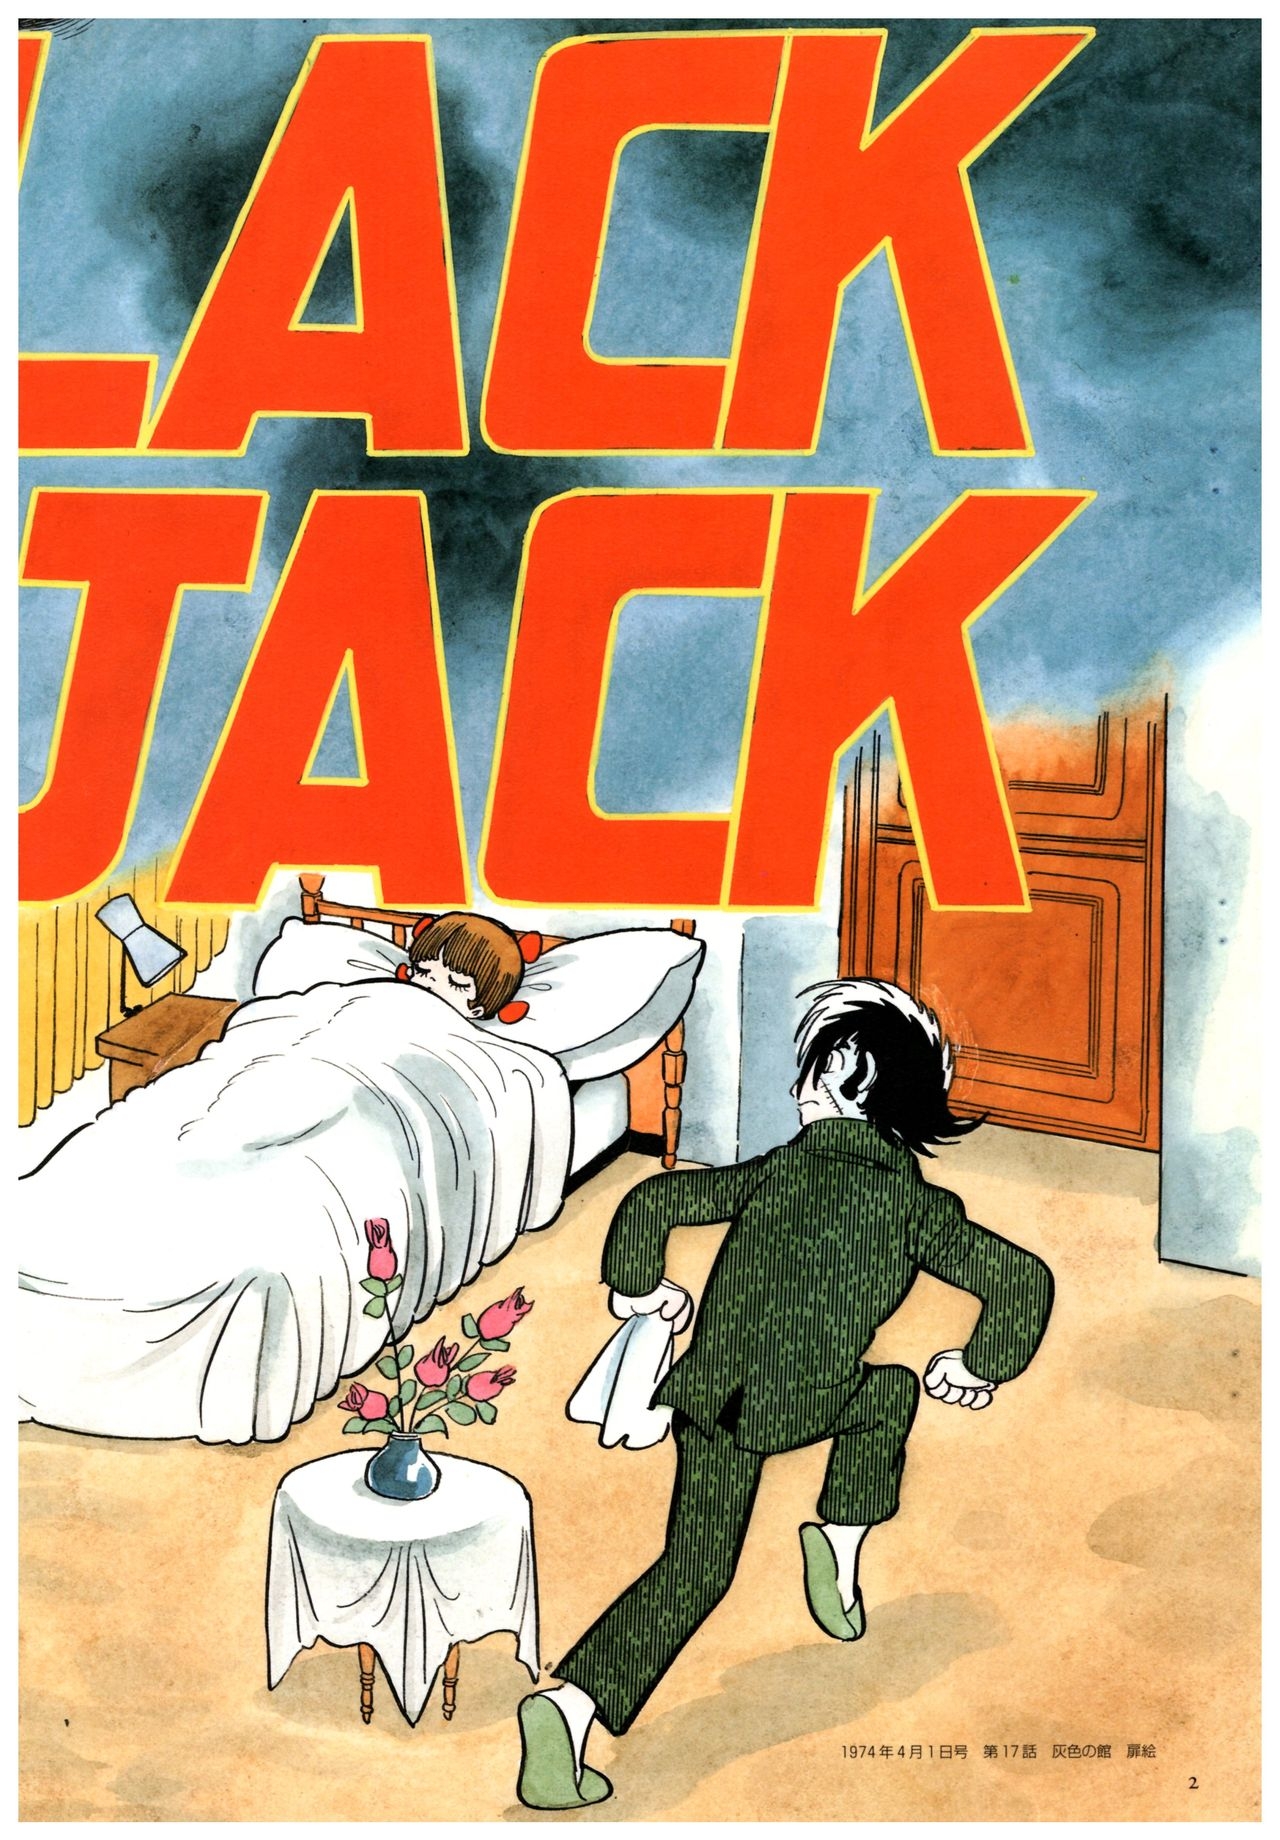 All of Black Jack By Osamu Tezuka 6